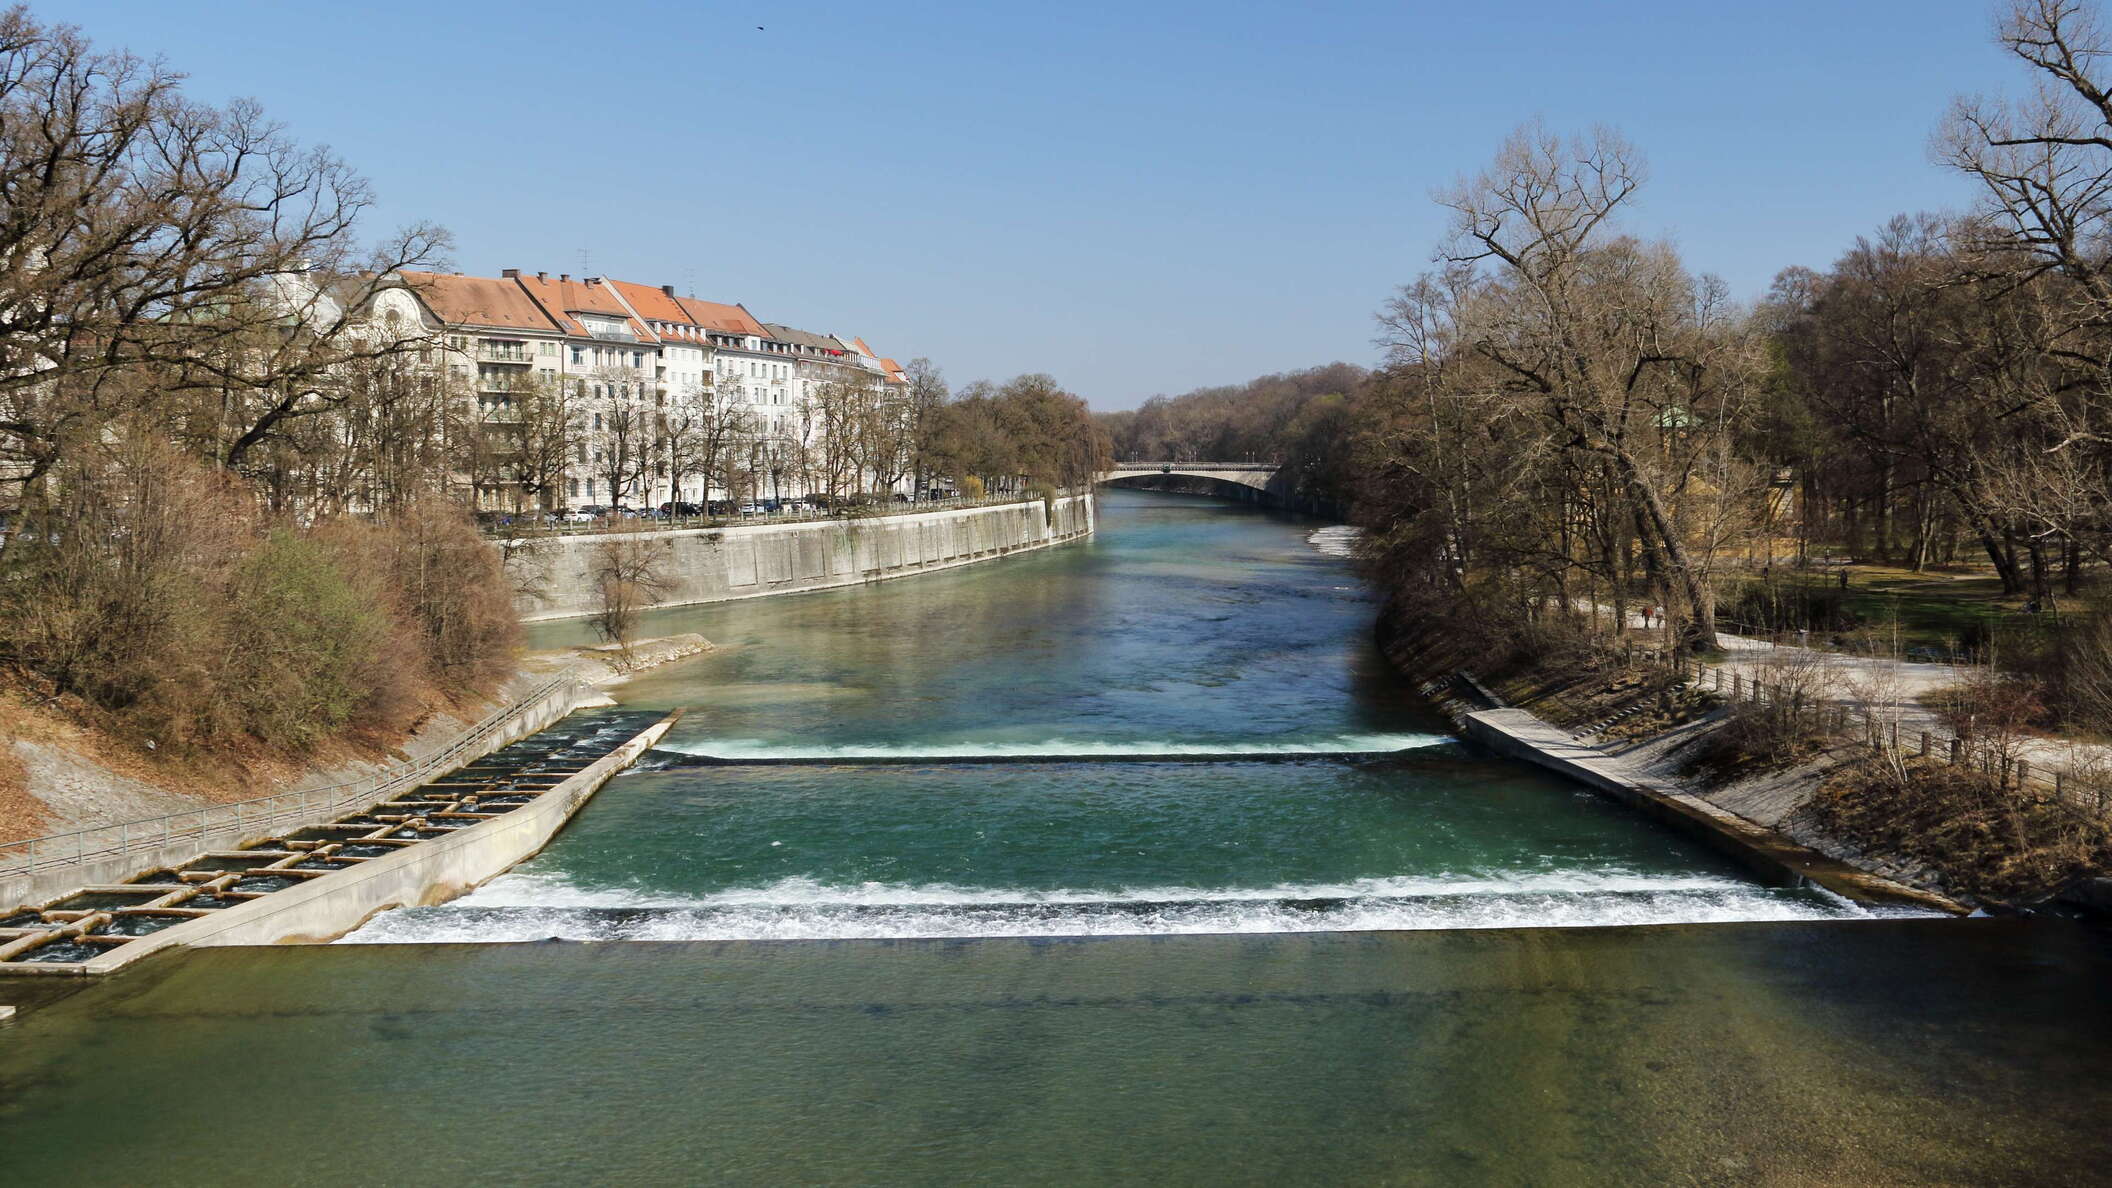 München | Kleine Isar with rapids